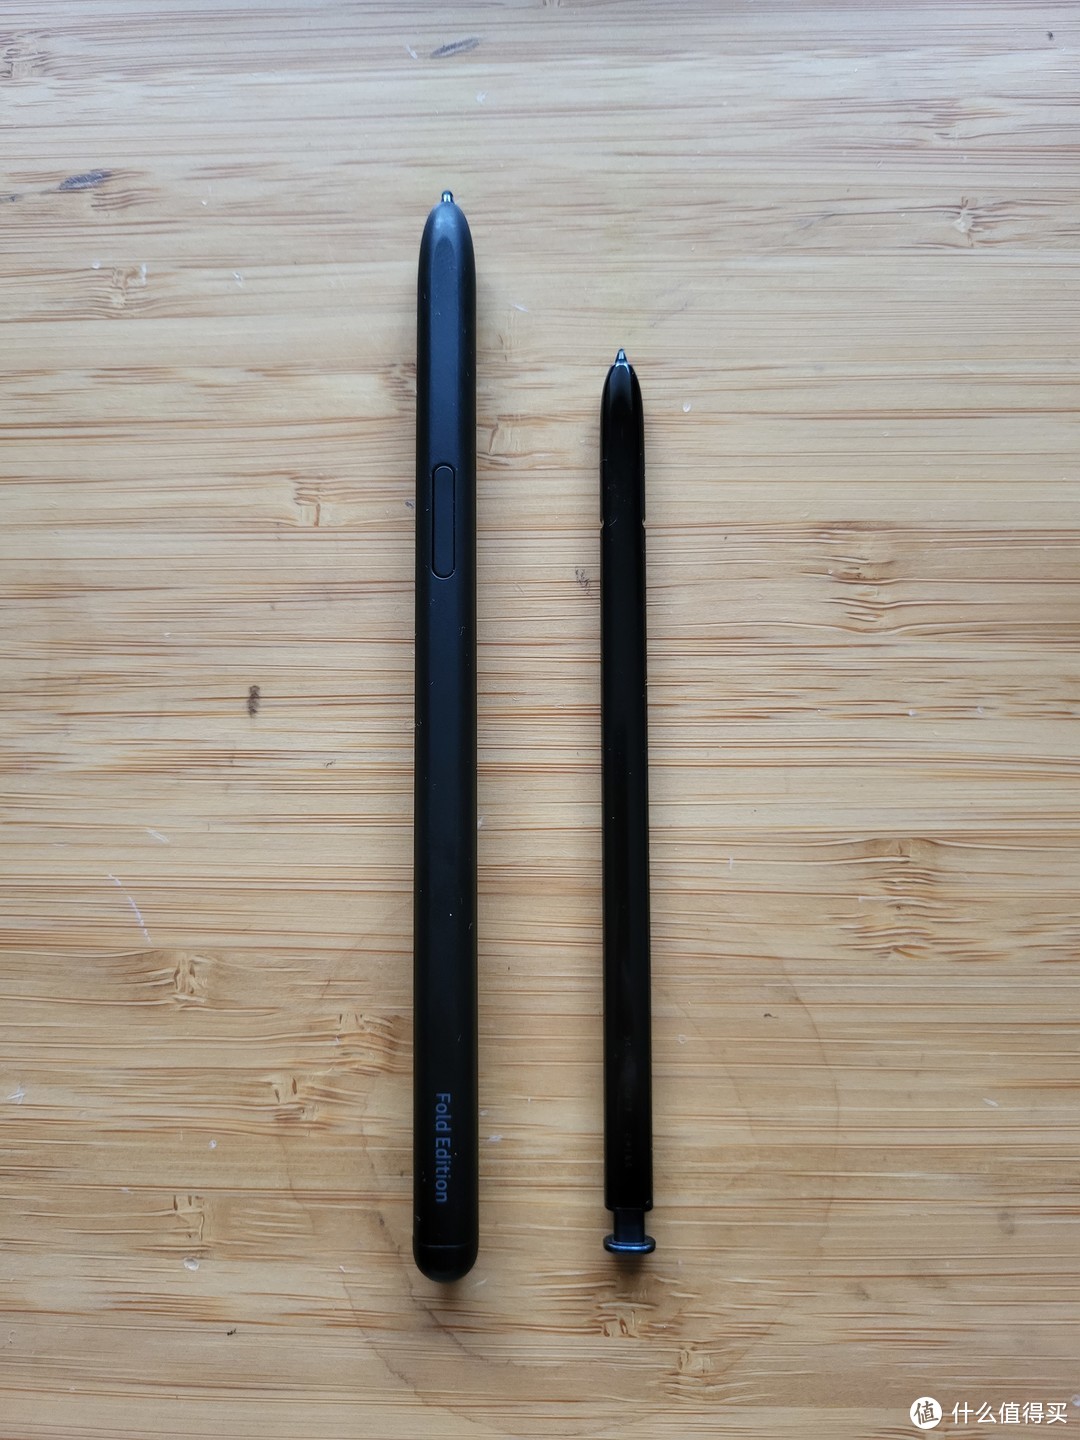 两代S pen对比